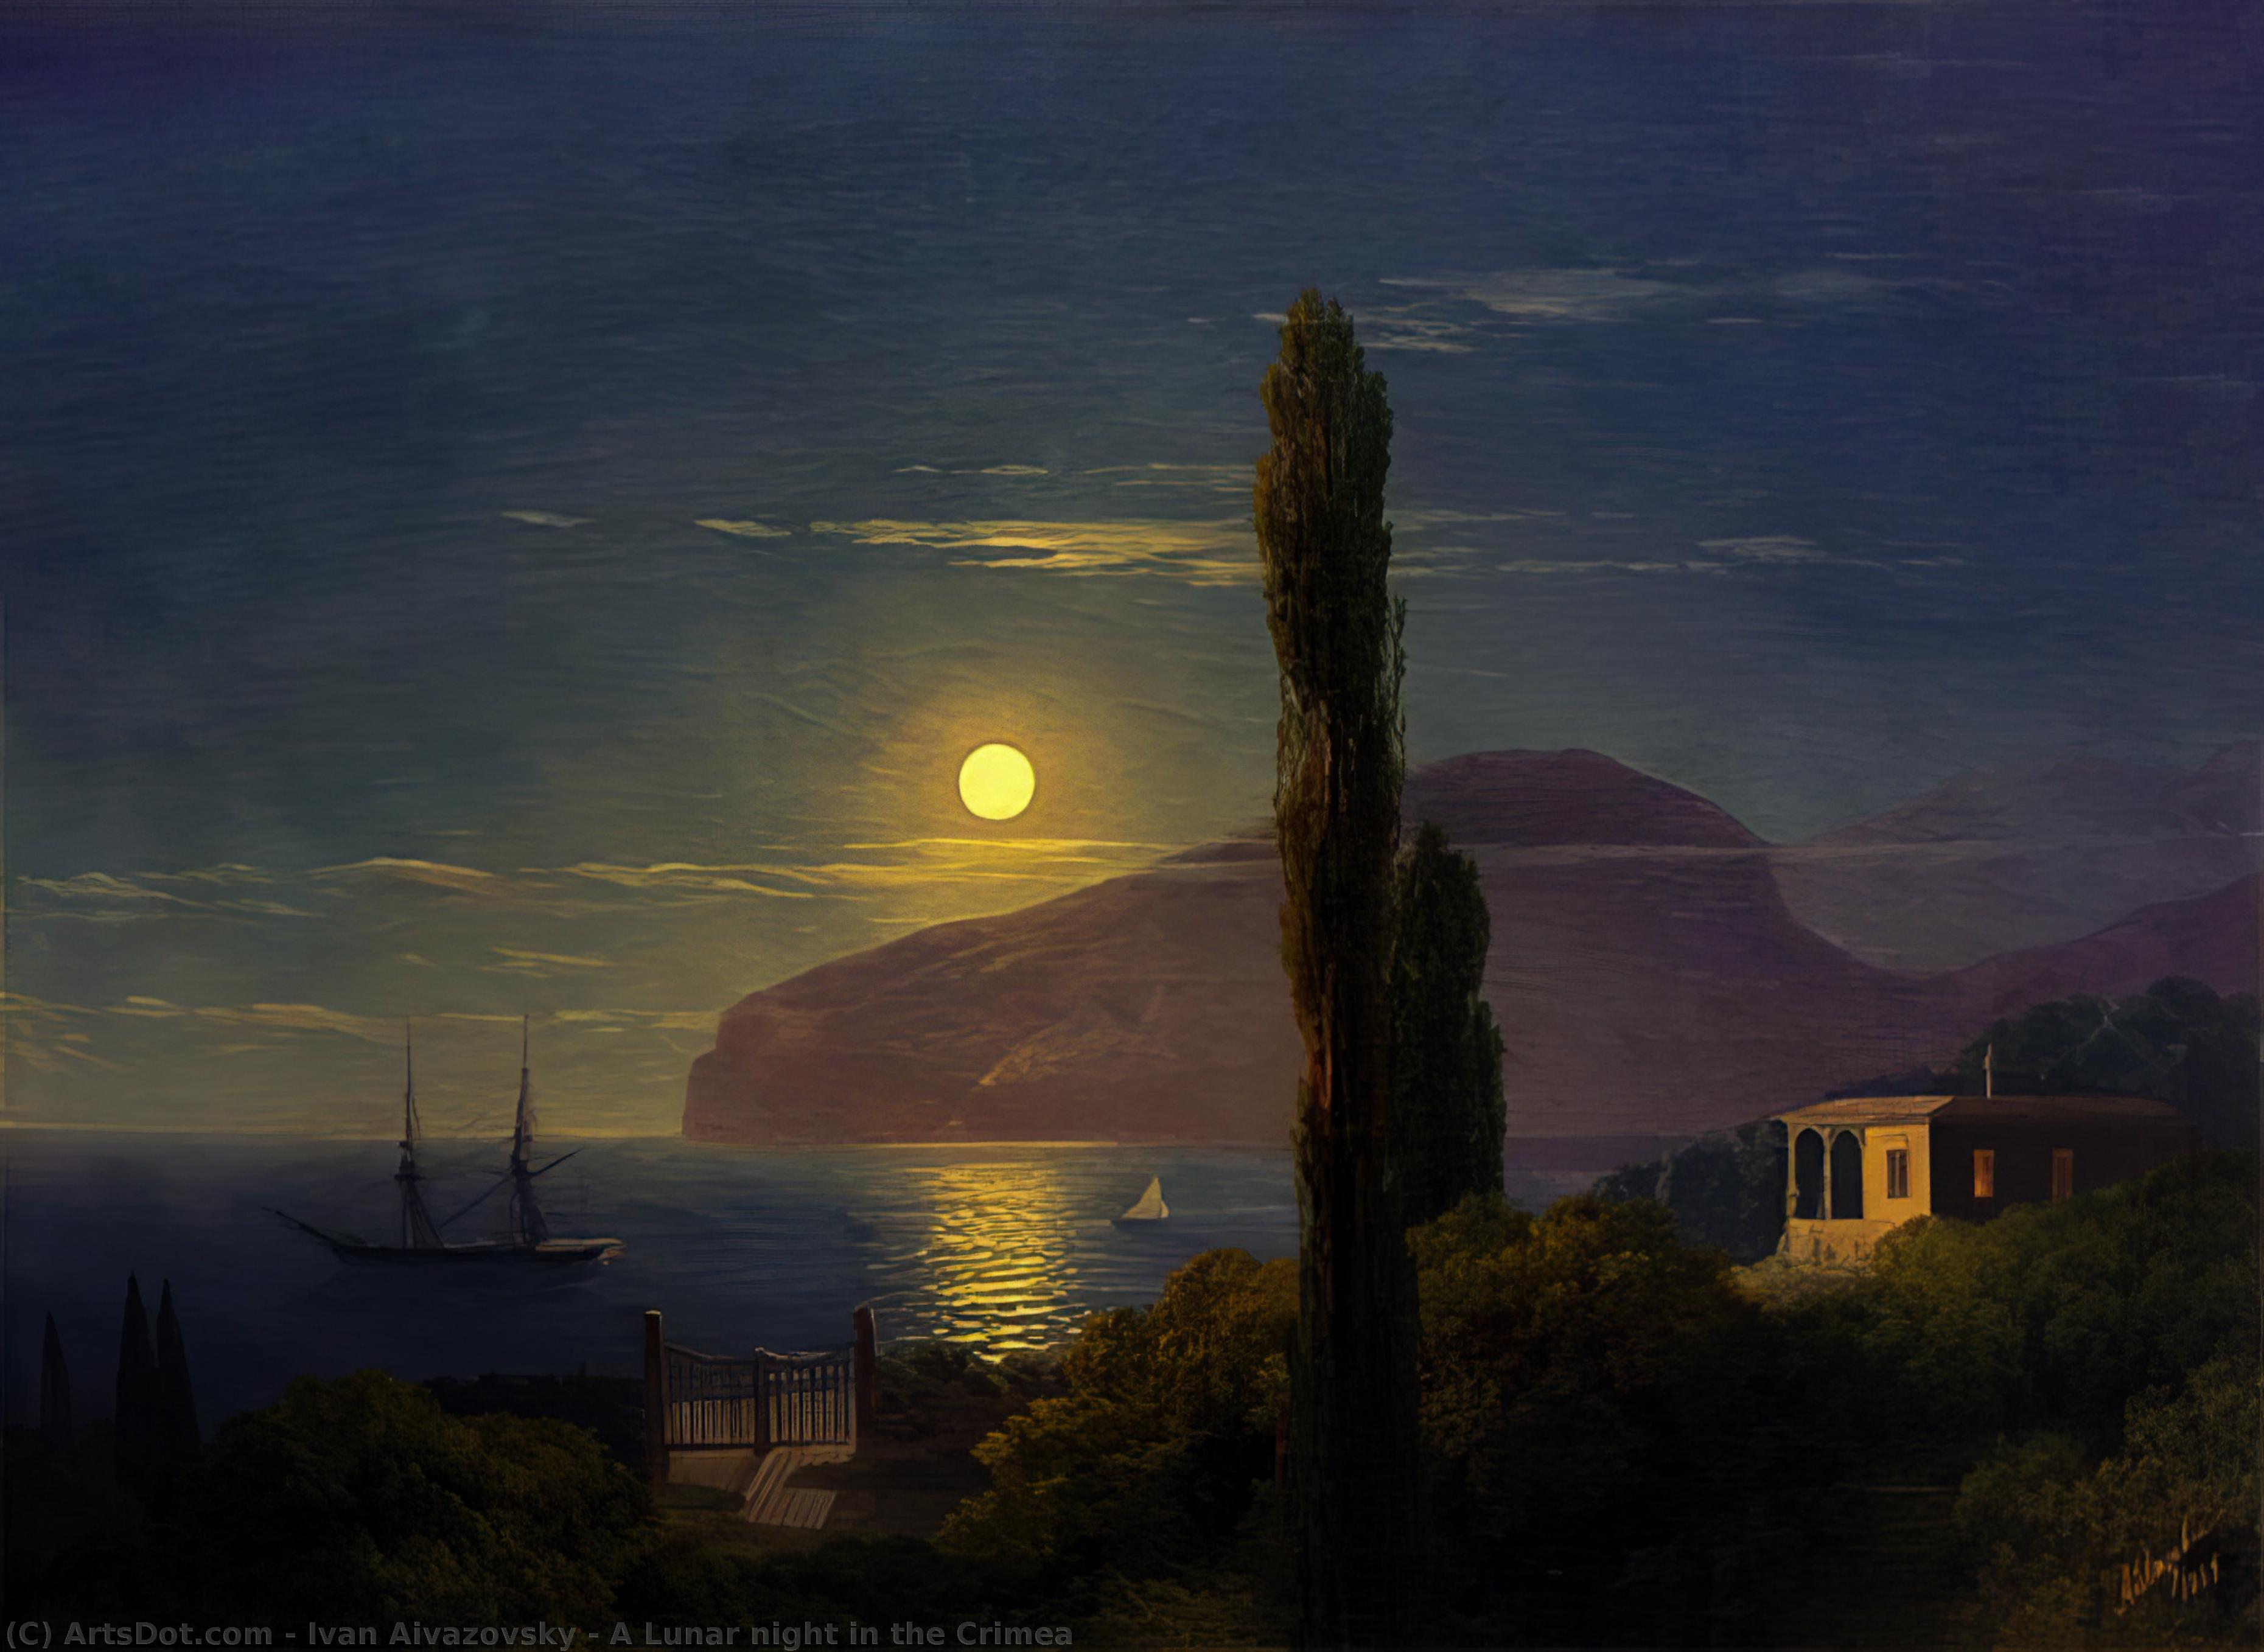 WikiOO.org - Εγκυκλοπαίδεια Καλών Τεχνών - Ζωγραφική, έργα τέχνης Ivan Aivazovsky - A Lunar night in the Crimea